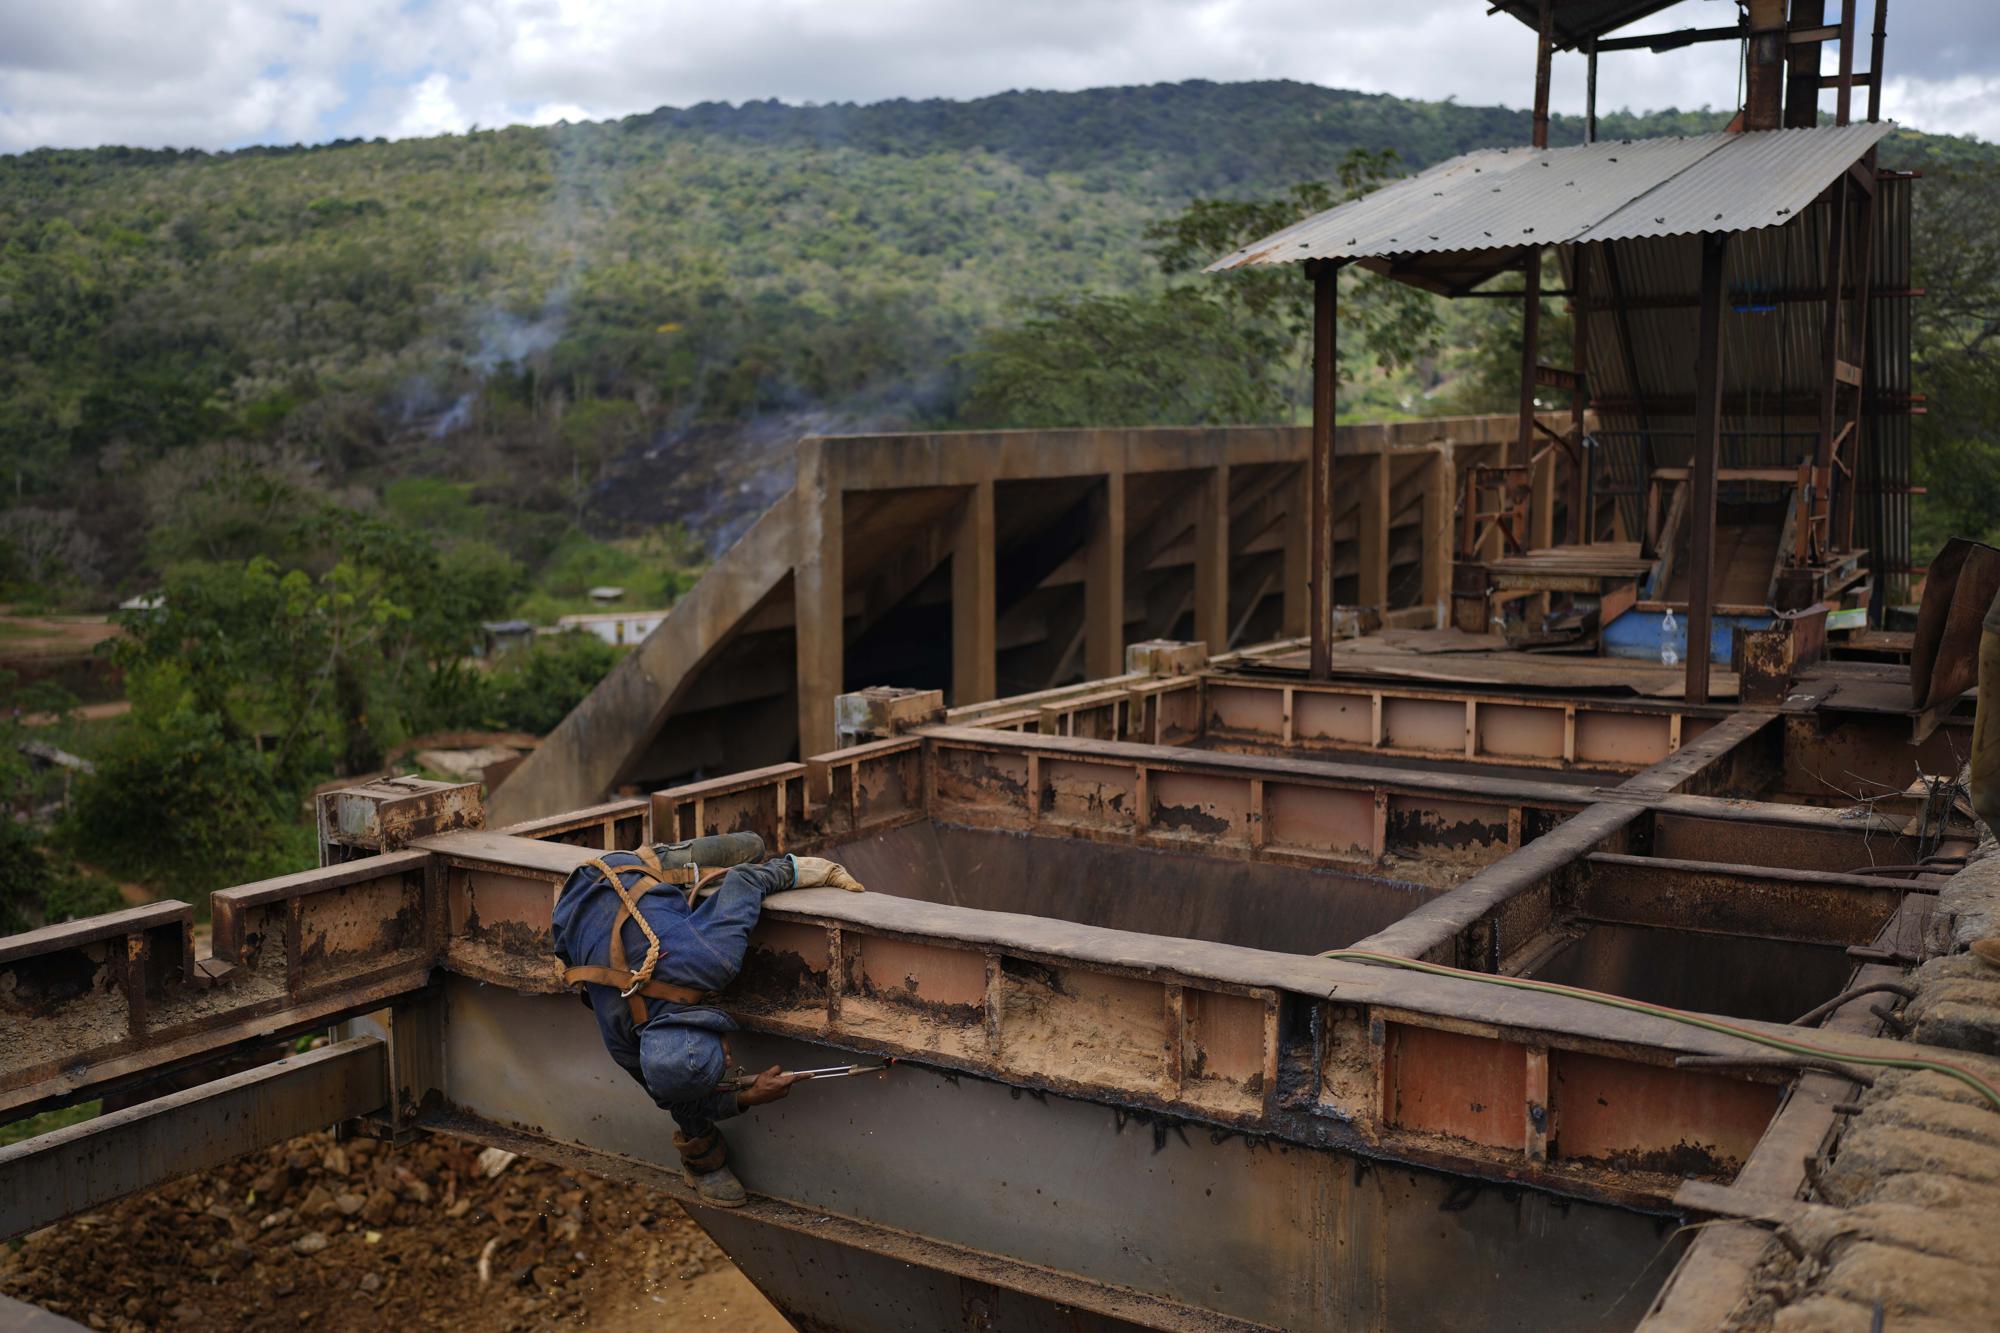 Un trabajador retira placas de hierro de un área no utilizada de una mina de oro subterránea para reutilizarlas para máquinas de fresado, en El Callao, estado de Bolívar, Venezuela, el viernes 28 de abril de 2023. (Foto AP/Matias Delacroix)